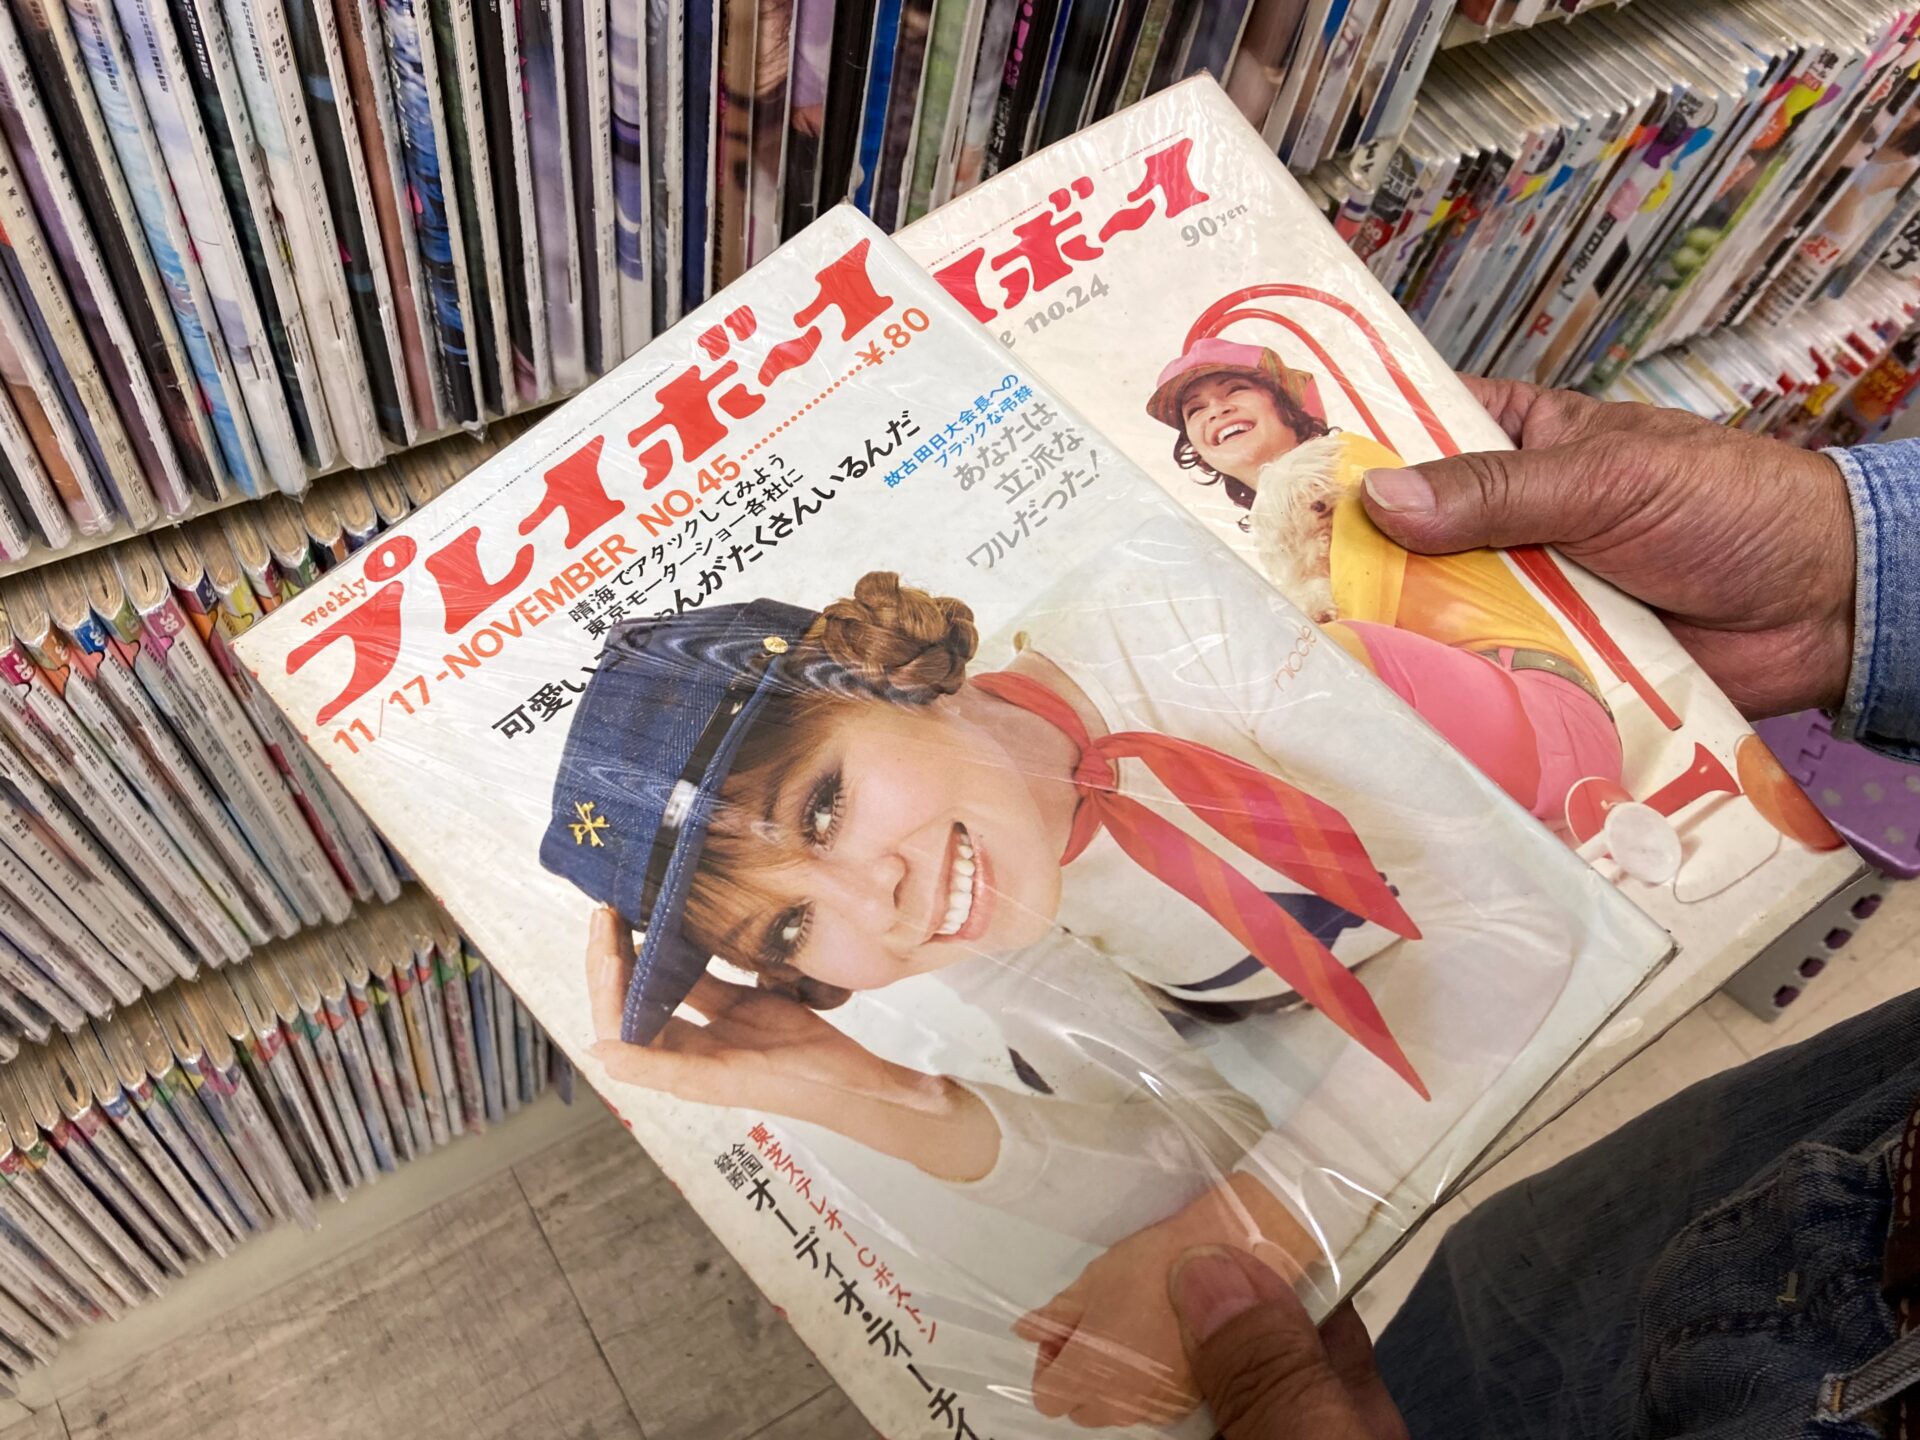 「この品揃えは日本一。全部、僕が買い付けるから」と松尾さん。1970年発刊の『プレイボーイ』の表紙は今見ても可愛い